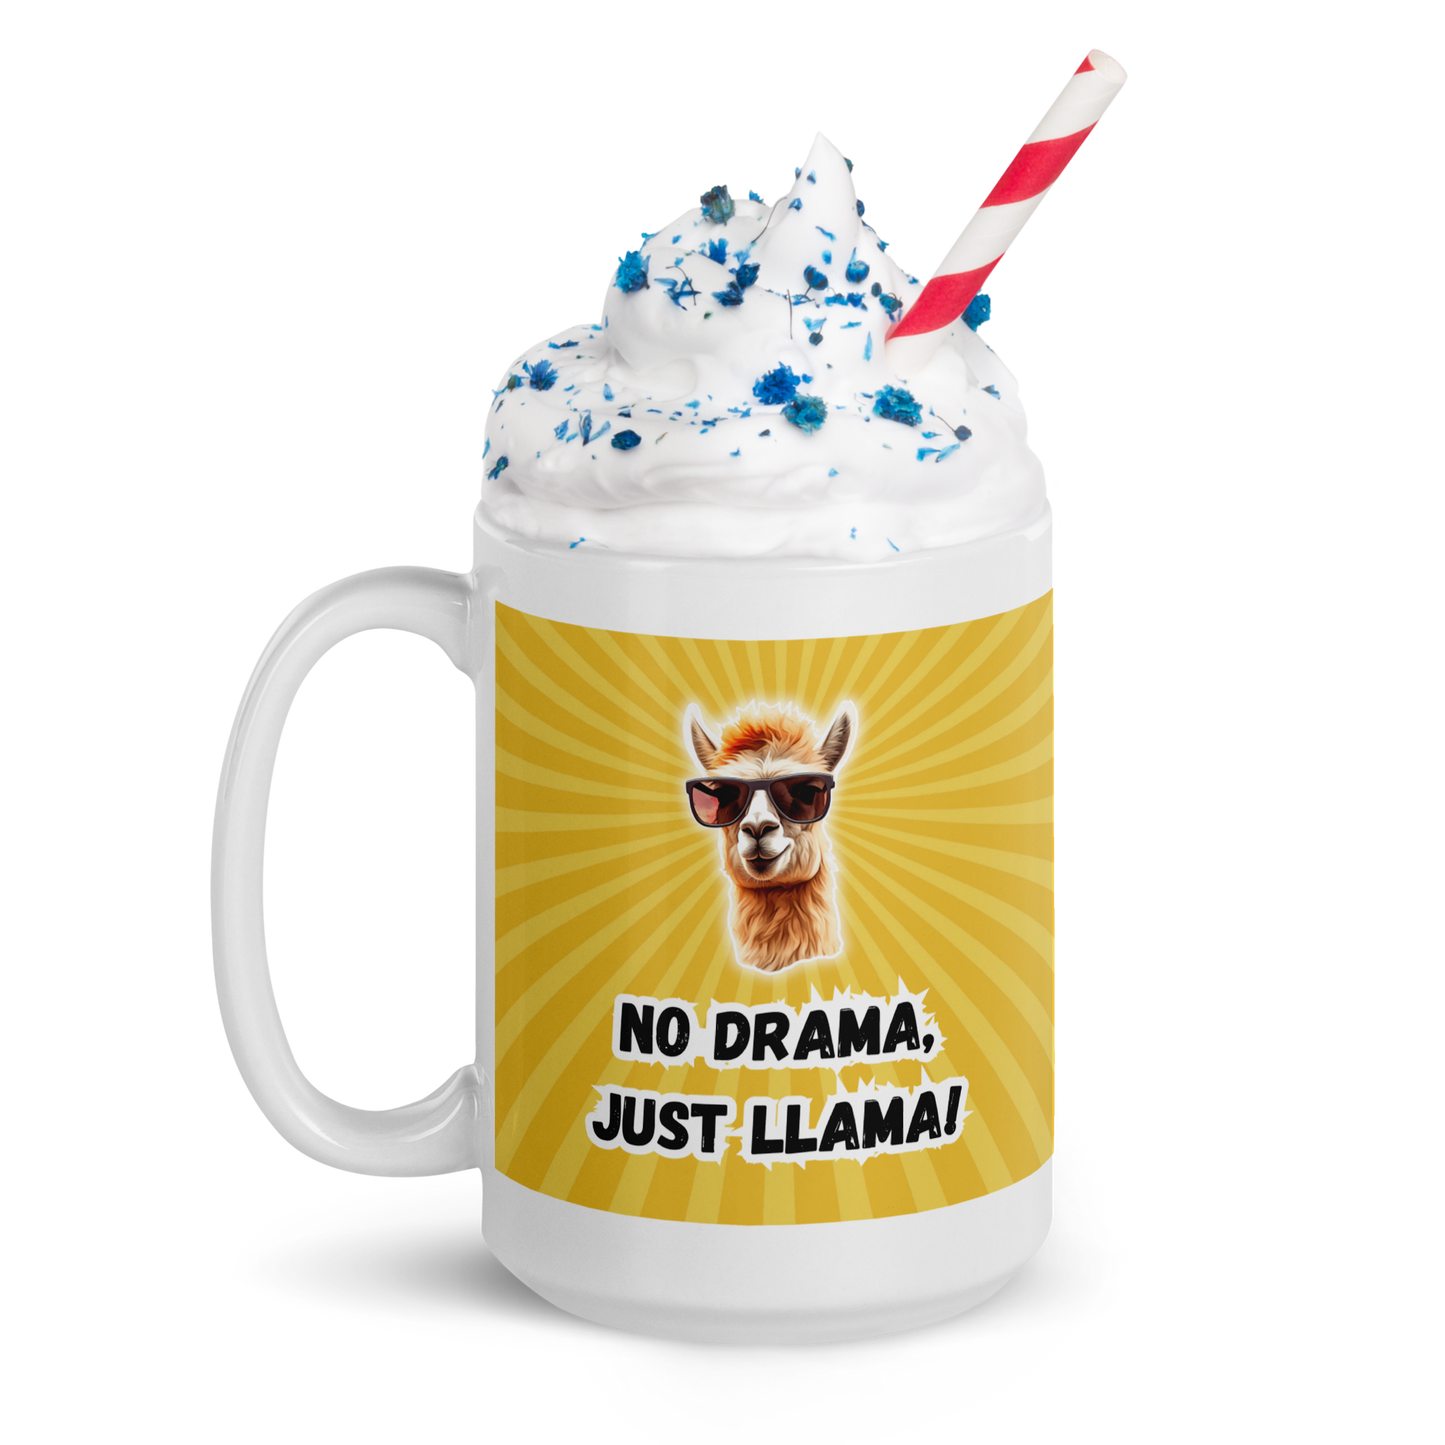 Glossy Mug: No Drama, Just Llama! Your Daily Dose of Hilarious Drama-Free Sips